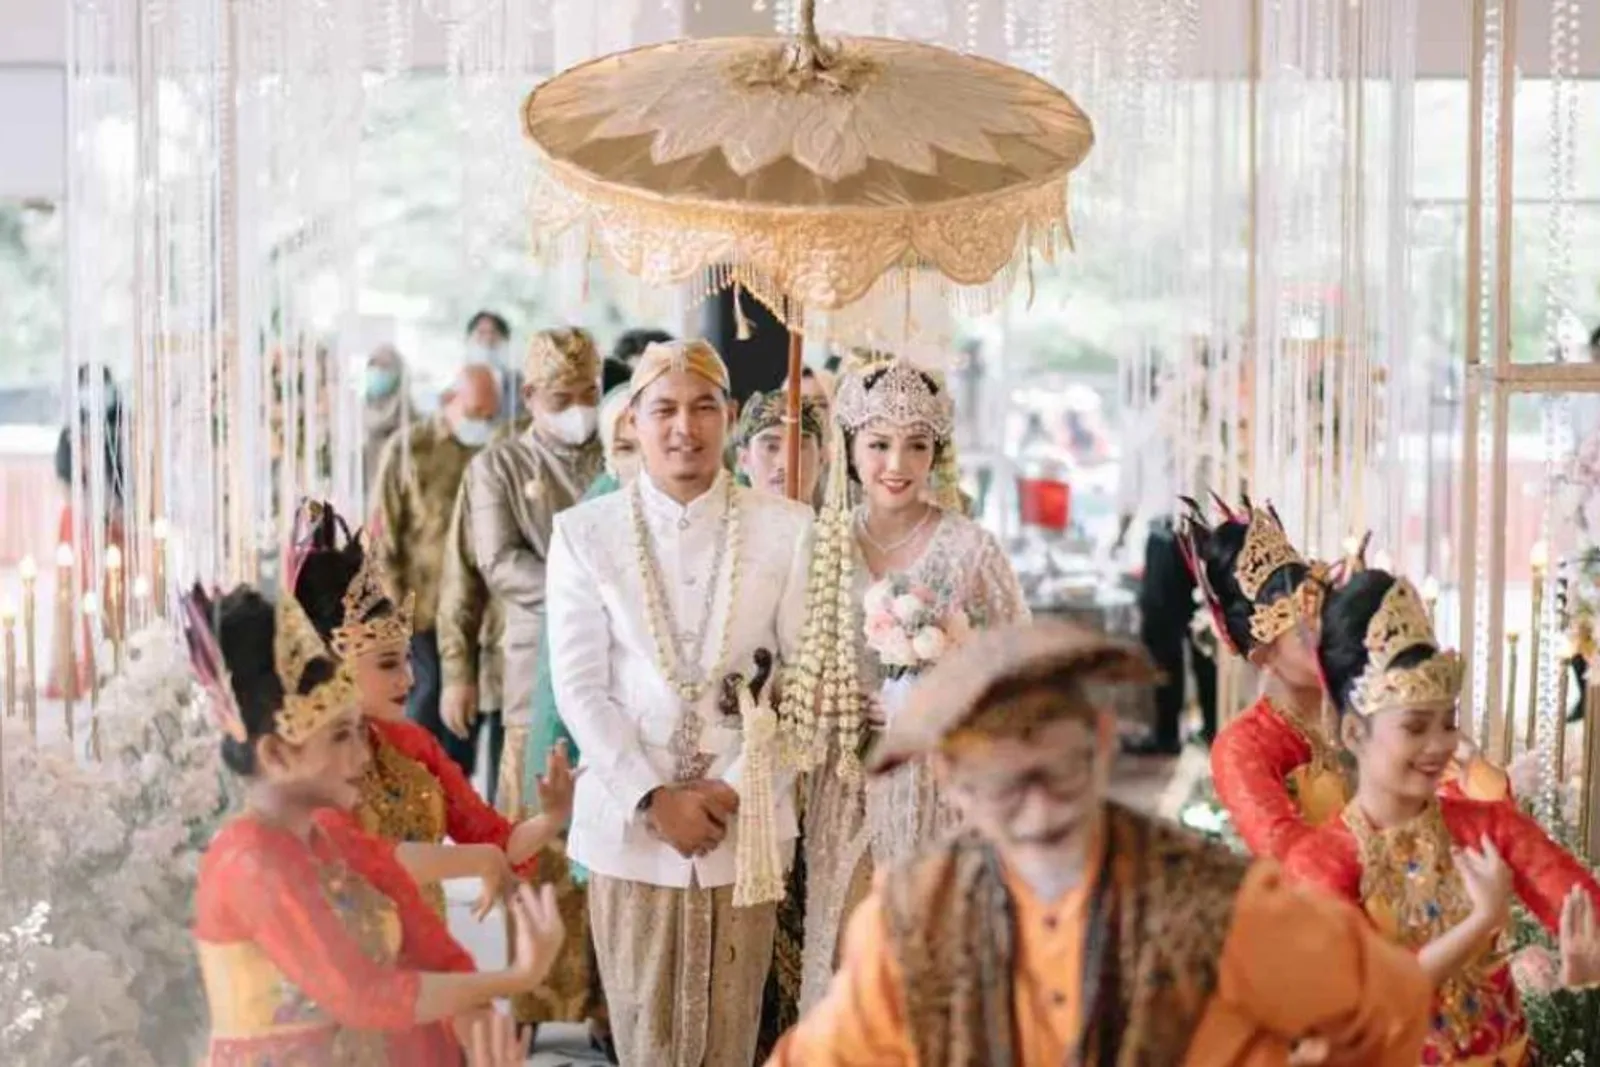 Susunan Acara Pernikahan Adat Sunda, dari Sebelum Akad hingga Resepsi